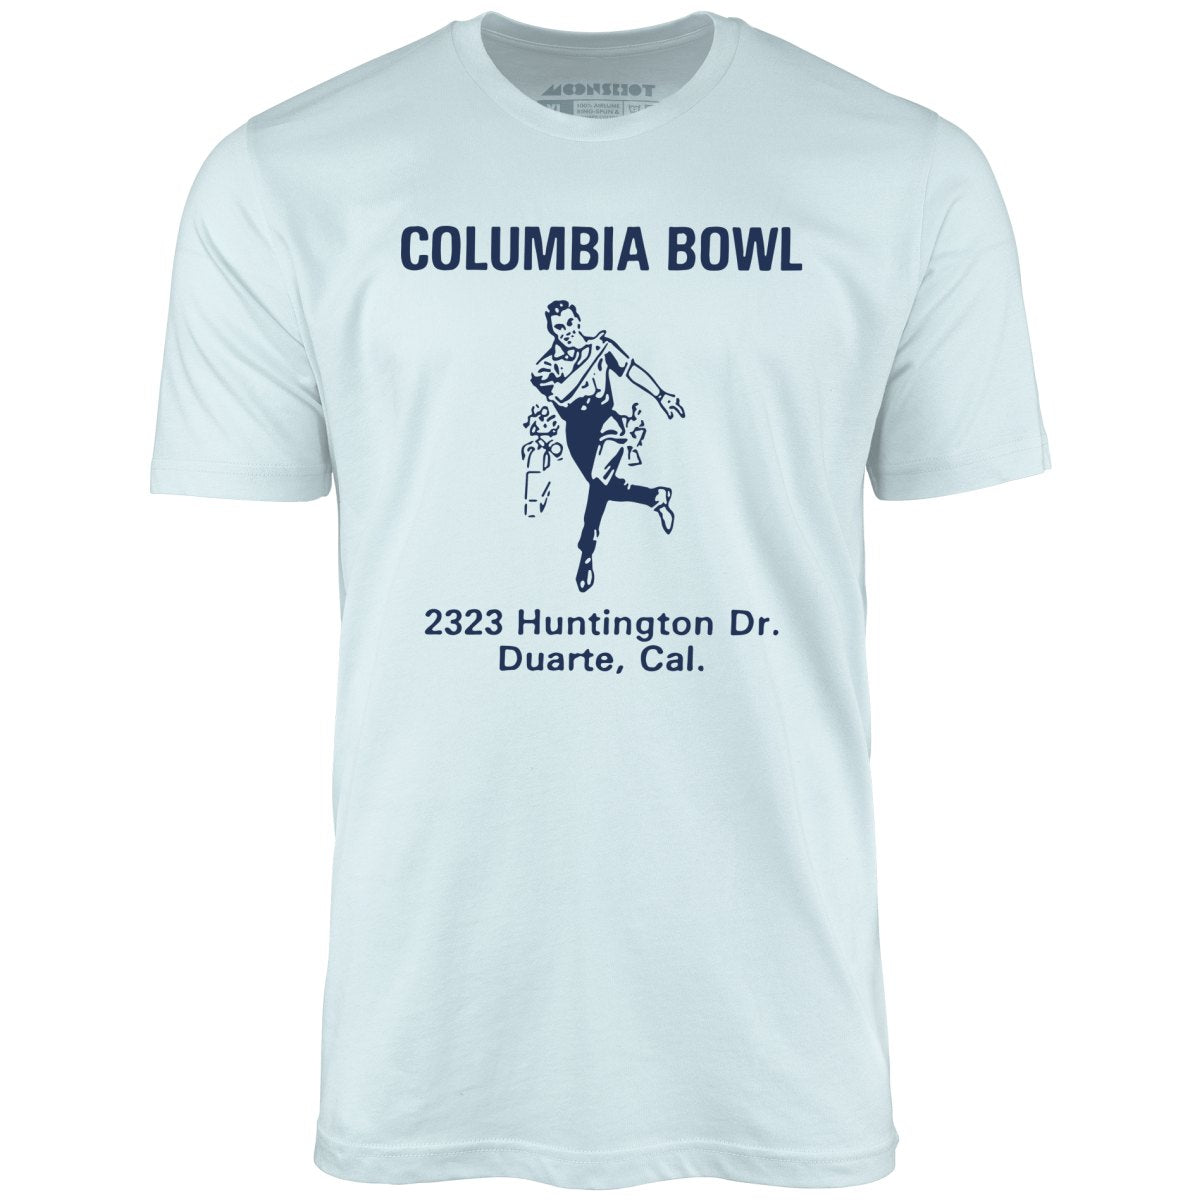 Columbia Bowl - Duarte, CA - Vintage Bowling Alley - Unisex T-Shirt